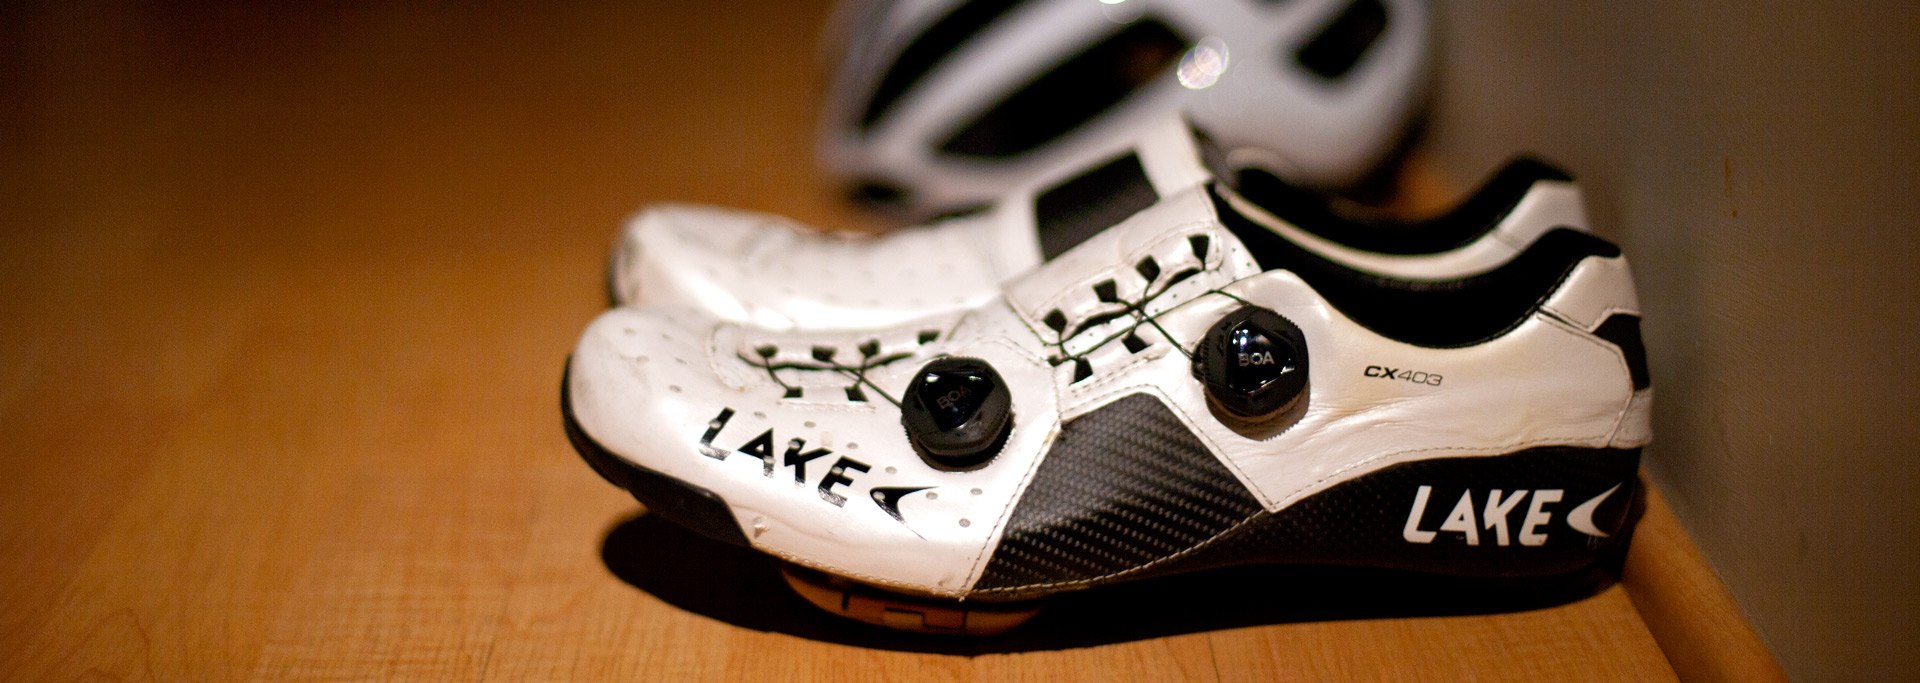 Lake CX403 Cycling Shoes